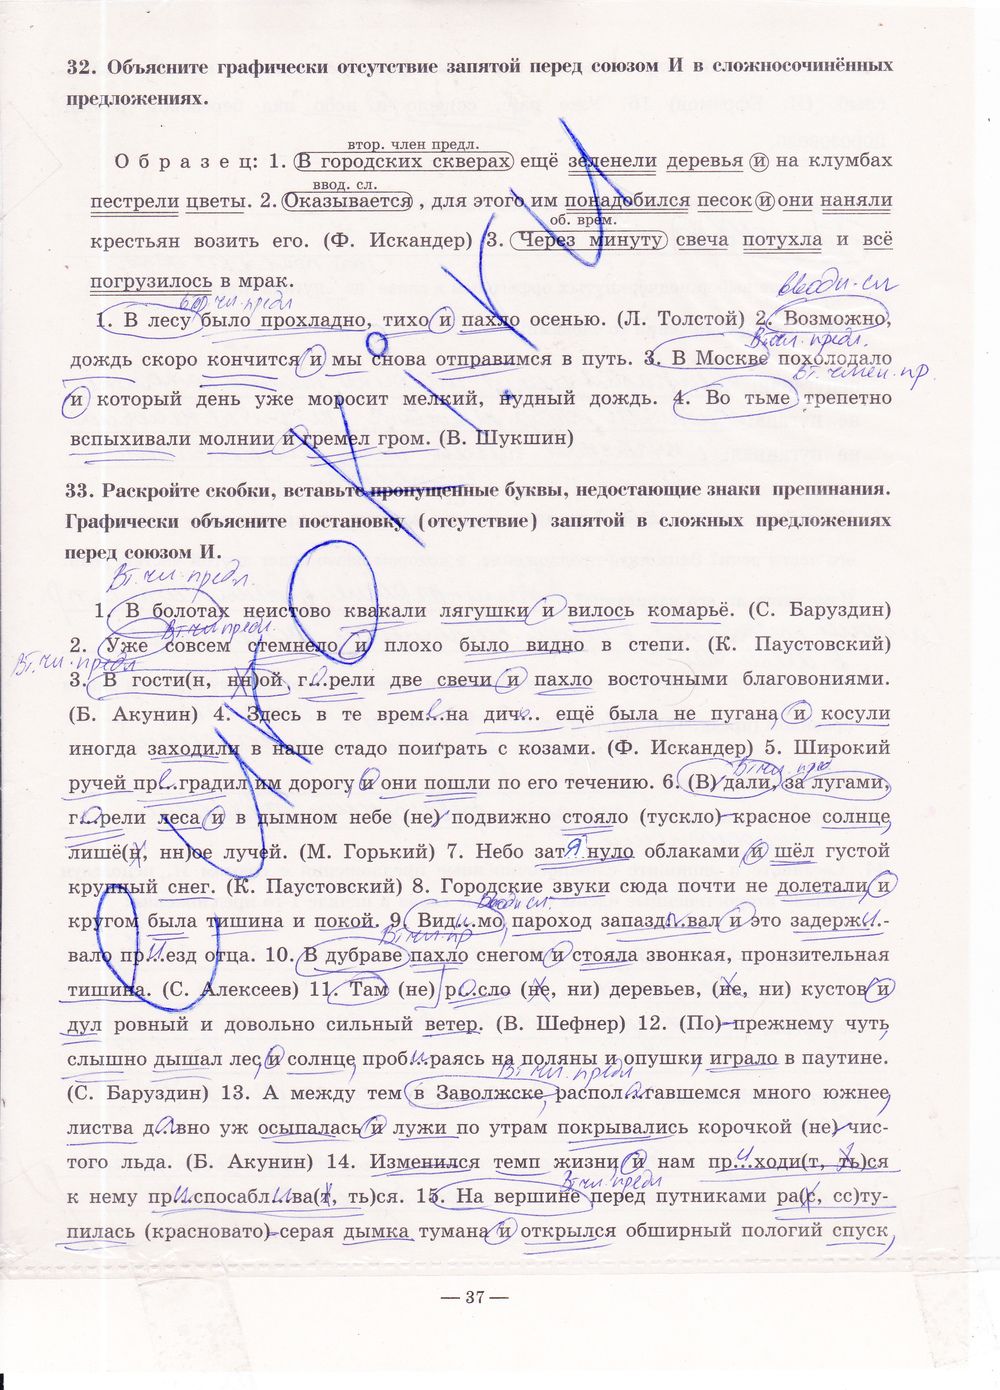 ГДЗ Русский язык 9 класс - стр. 37